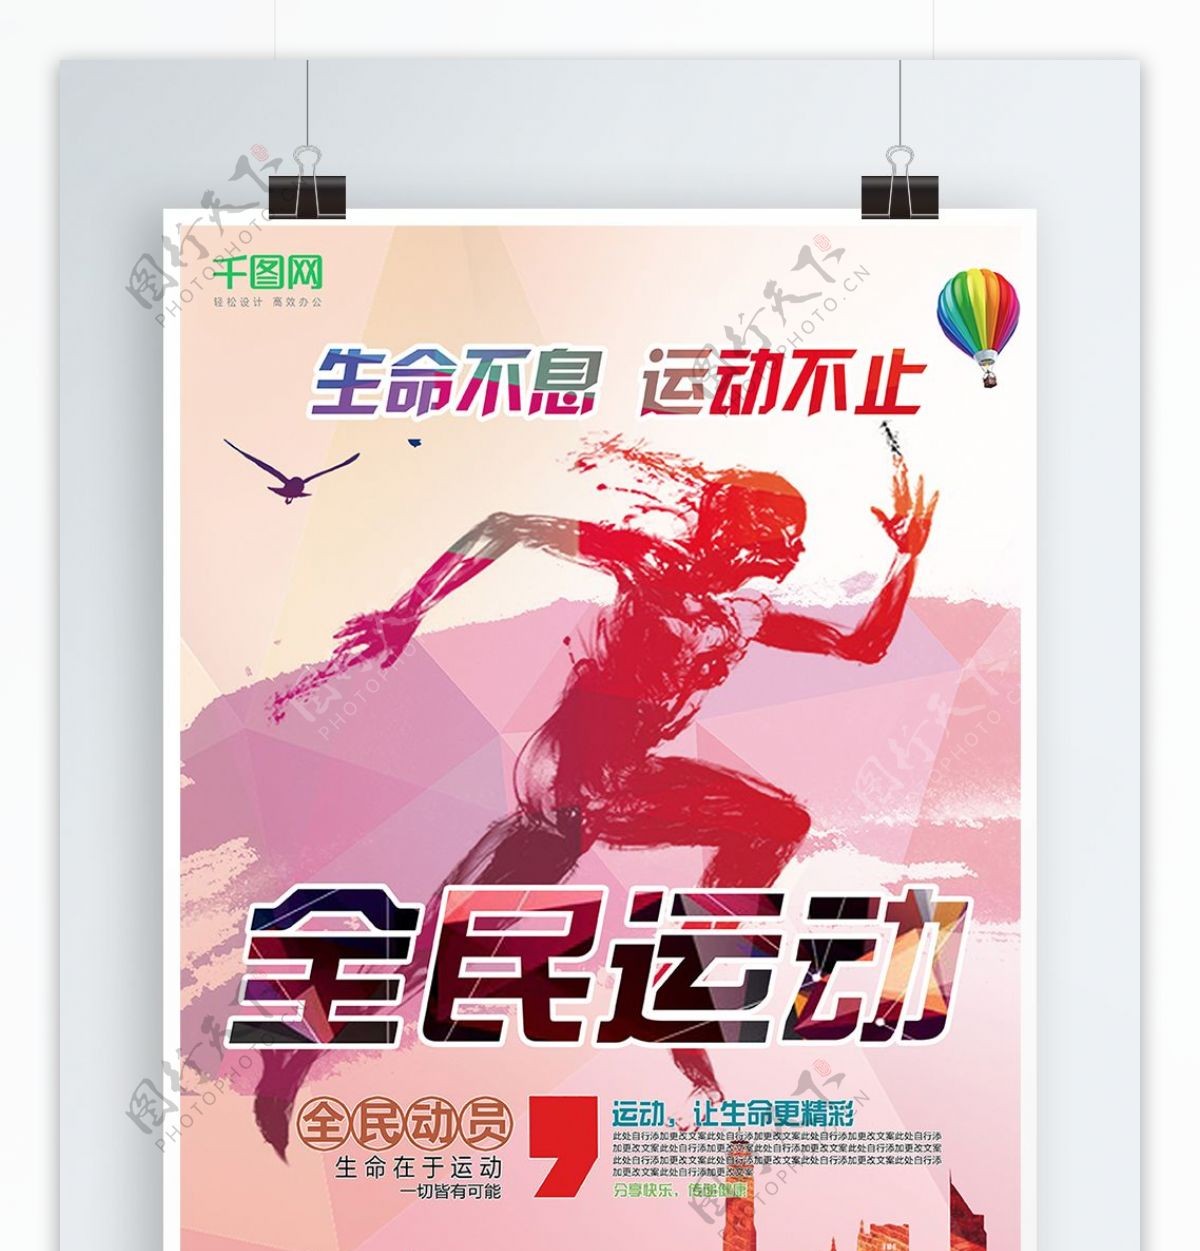 全民运动几何设计体育宣传海报设计